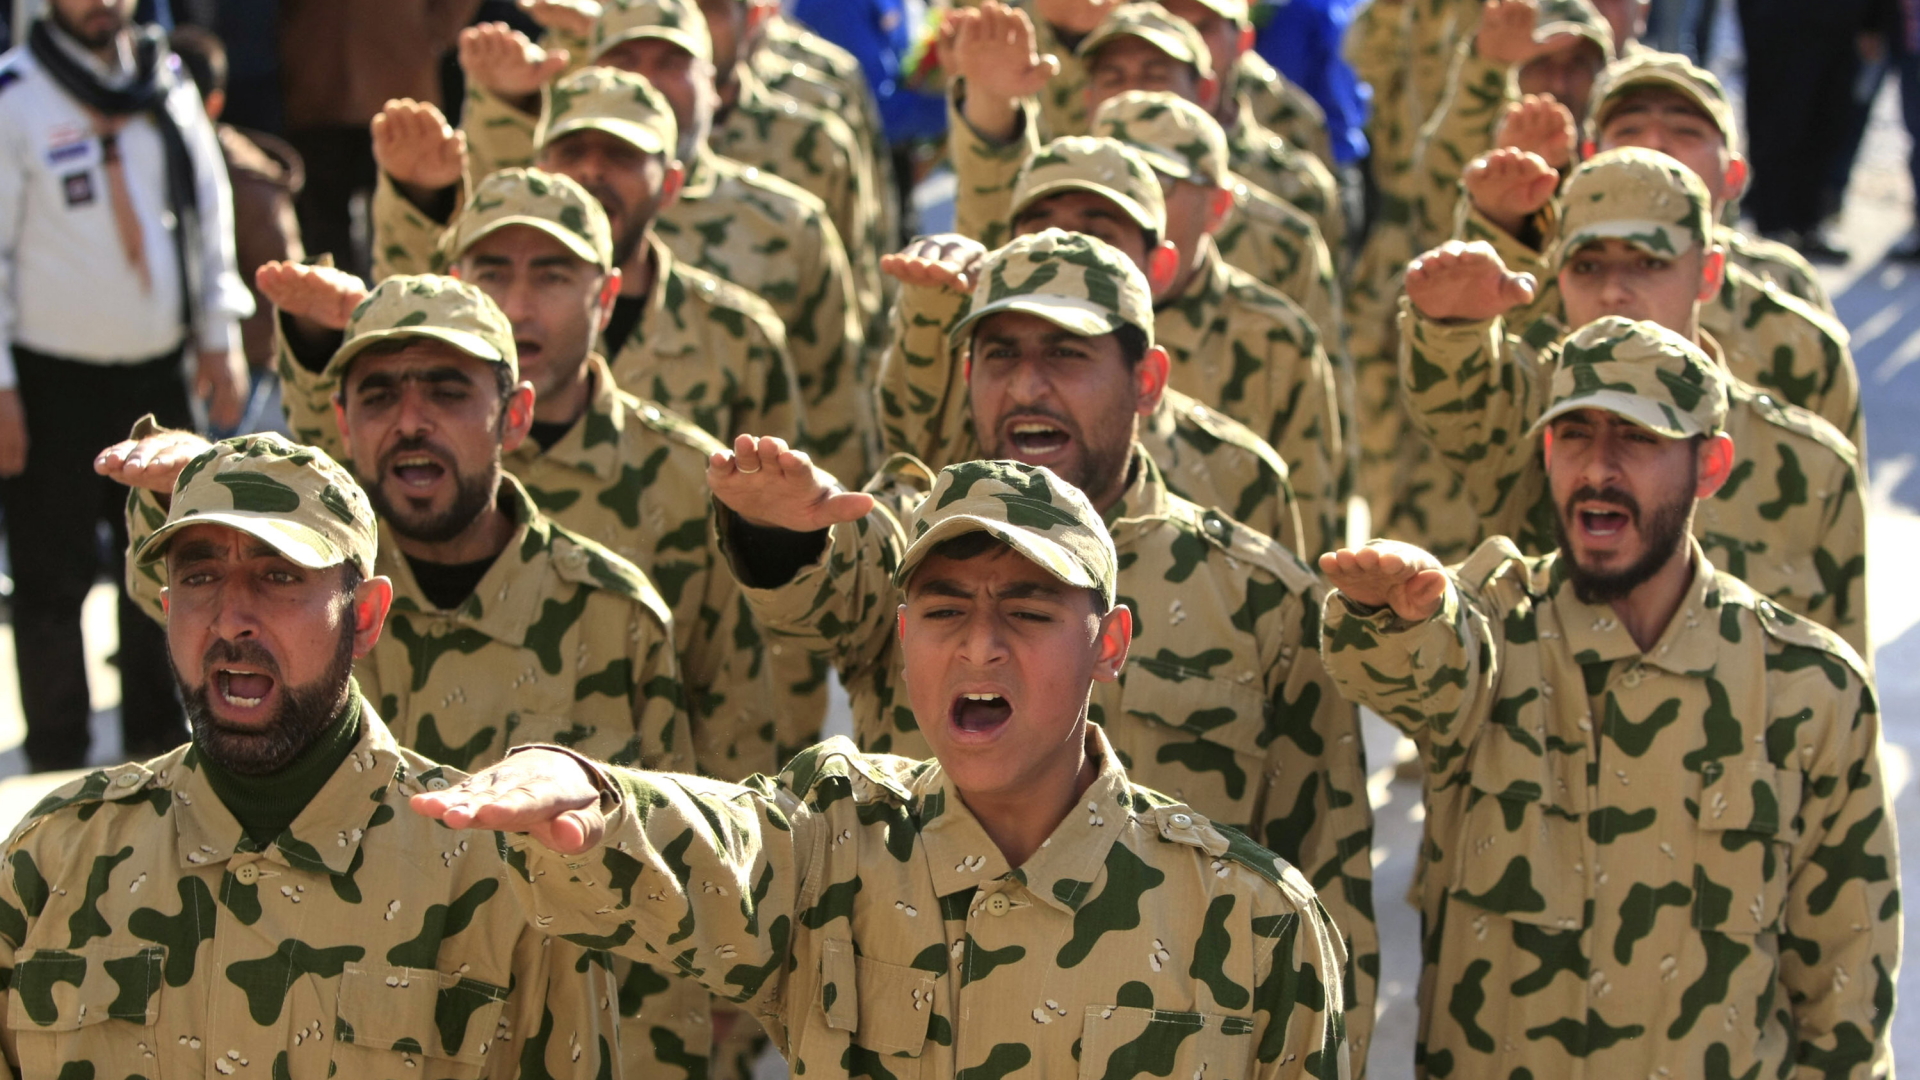 Libanesische Hisbollah-Truppen nehmen an einer Parade teil | dpa